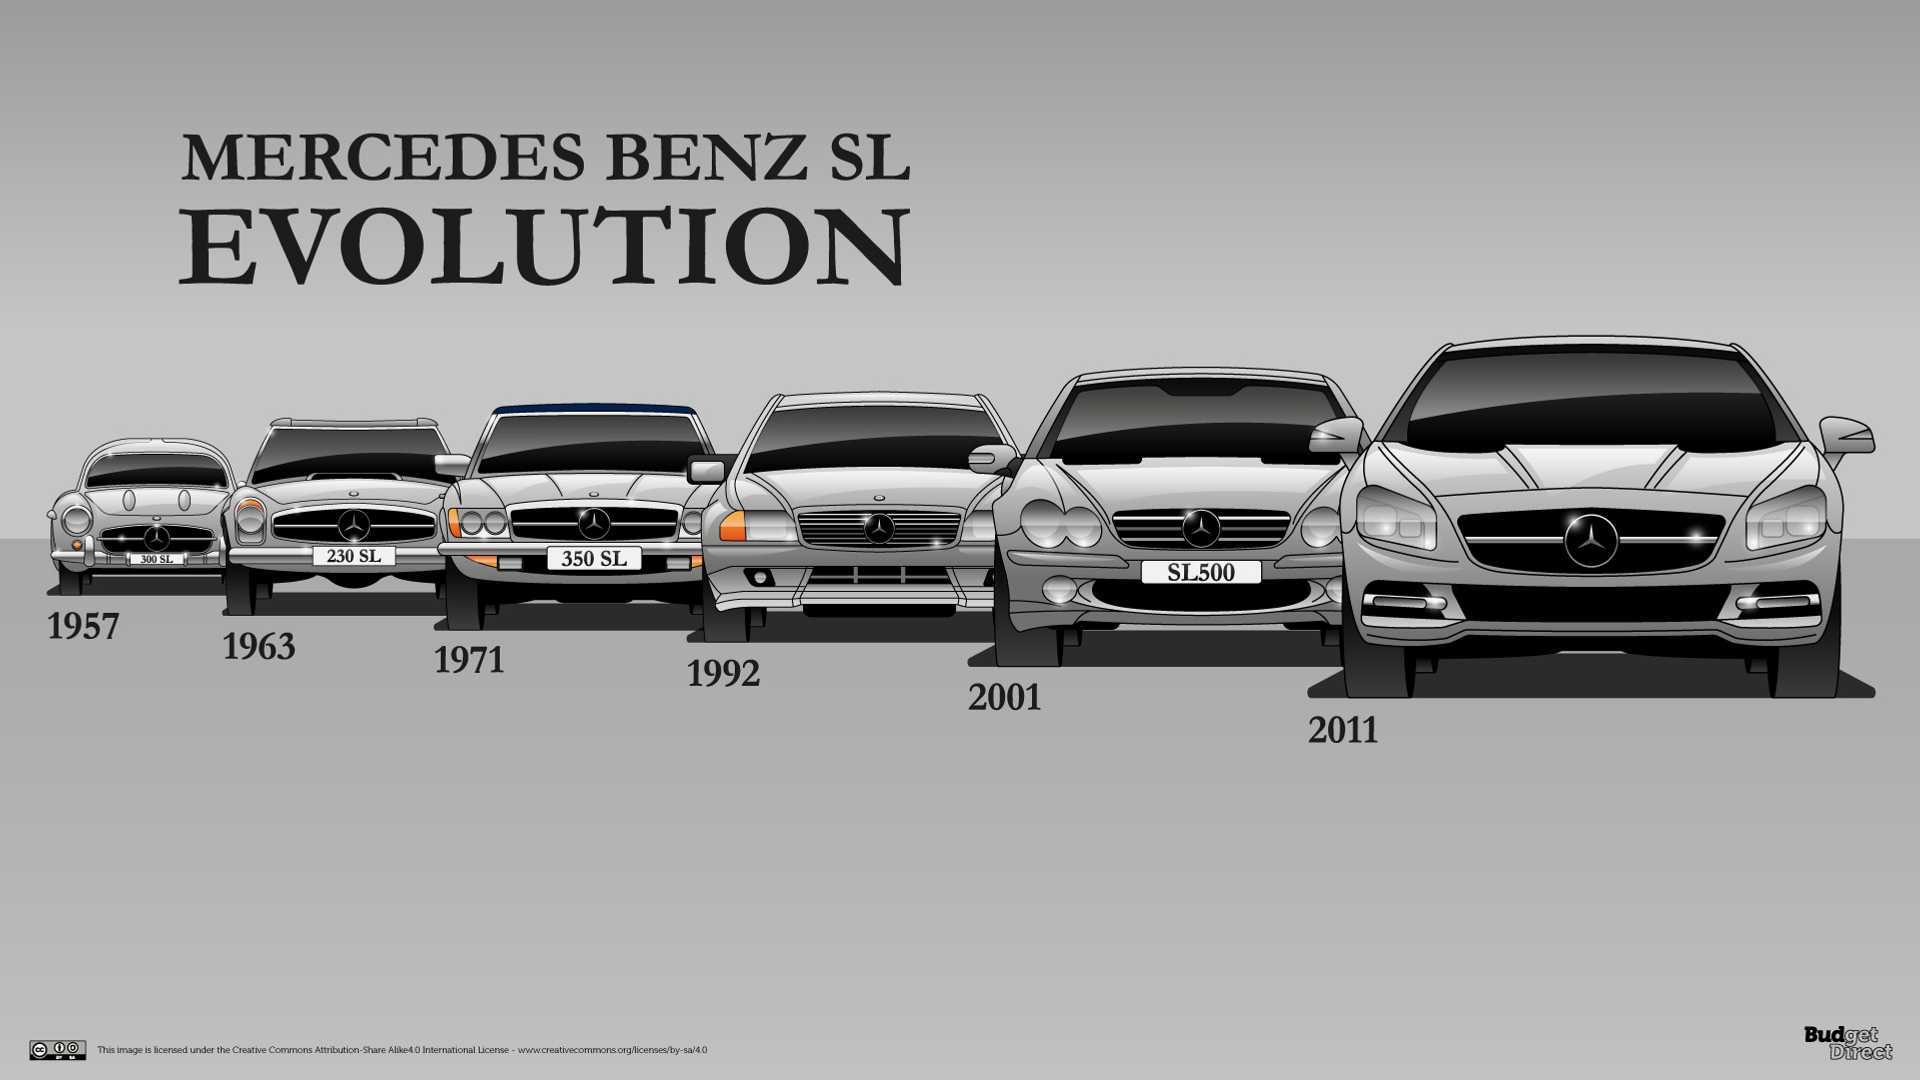 Mercedes-benz e-класс (w212) - mercedes-benz e-class (w212) - abcdef.wiki